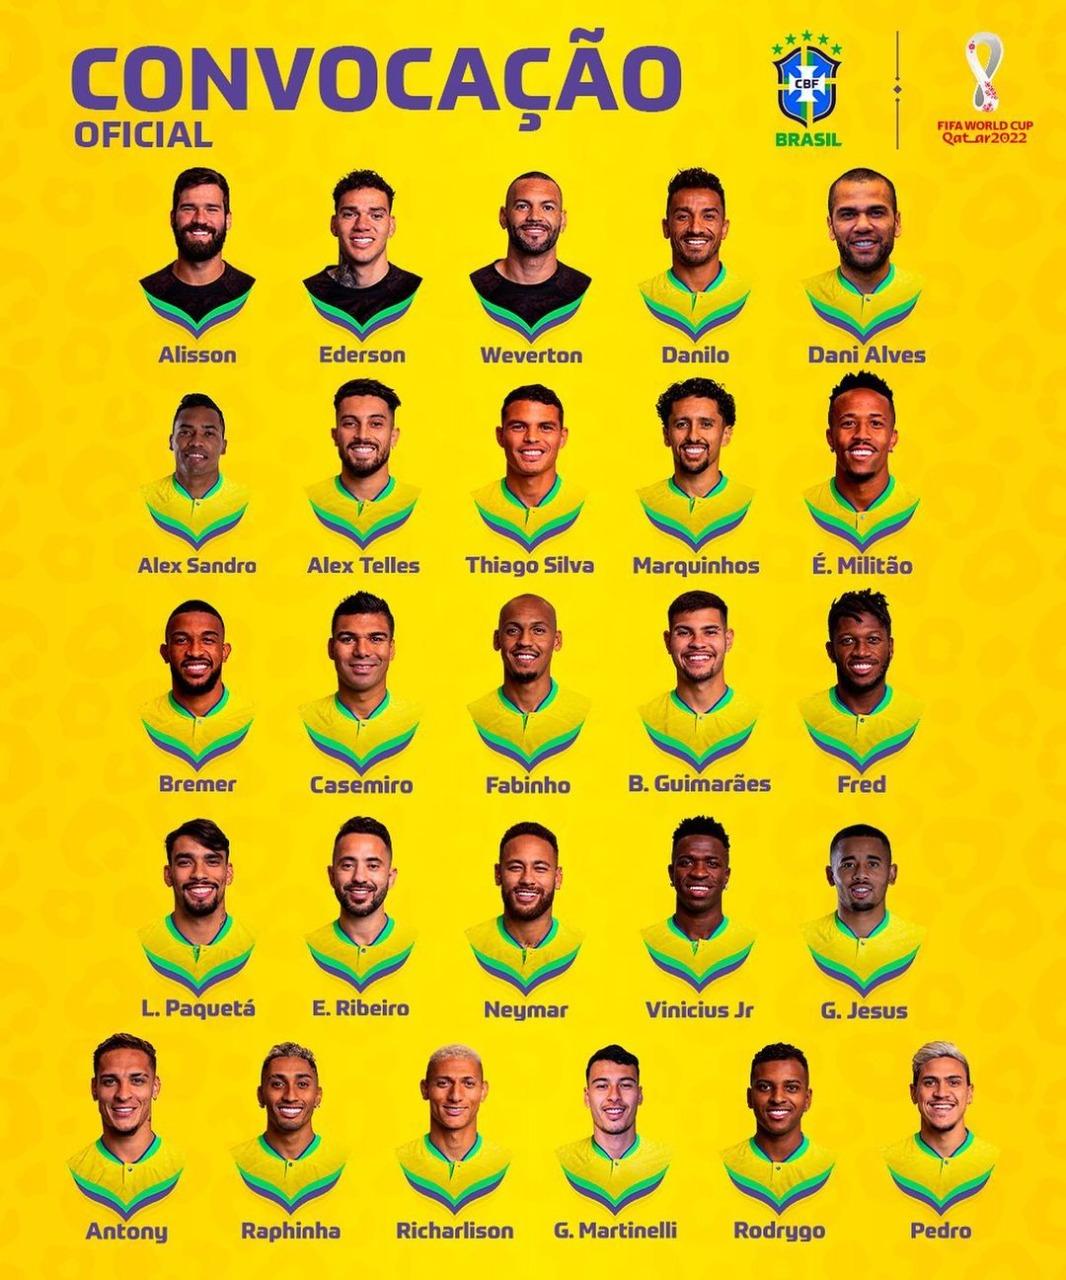 Quais os jogadores que vão jogar na seleção brasileira?